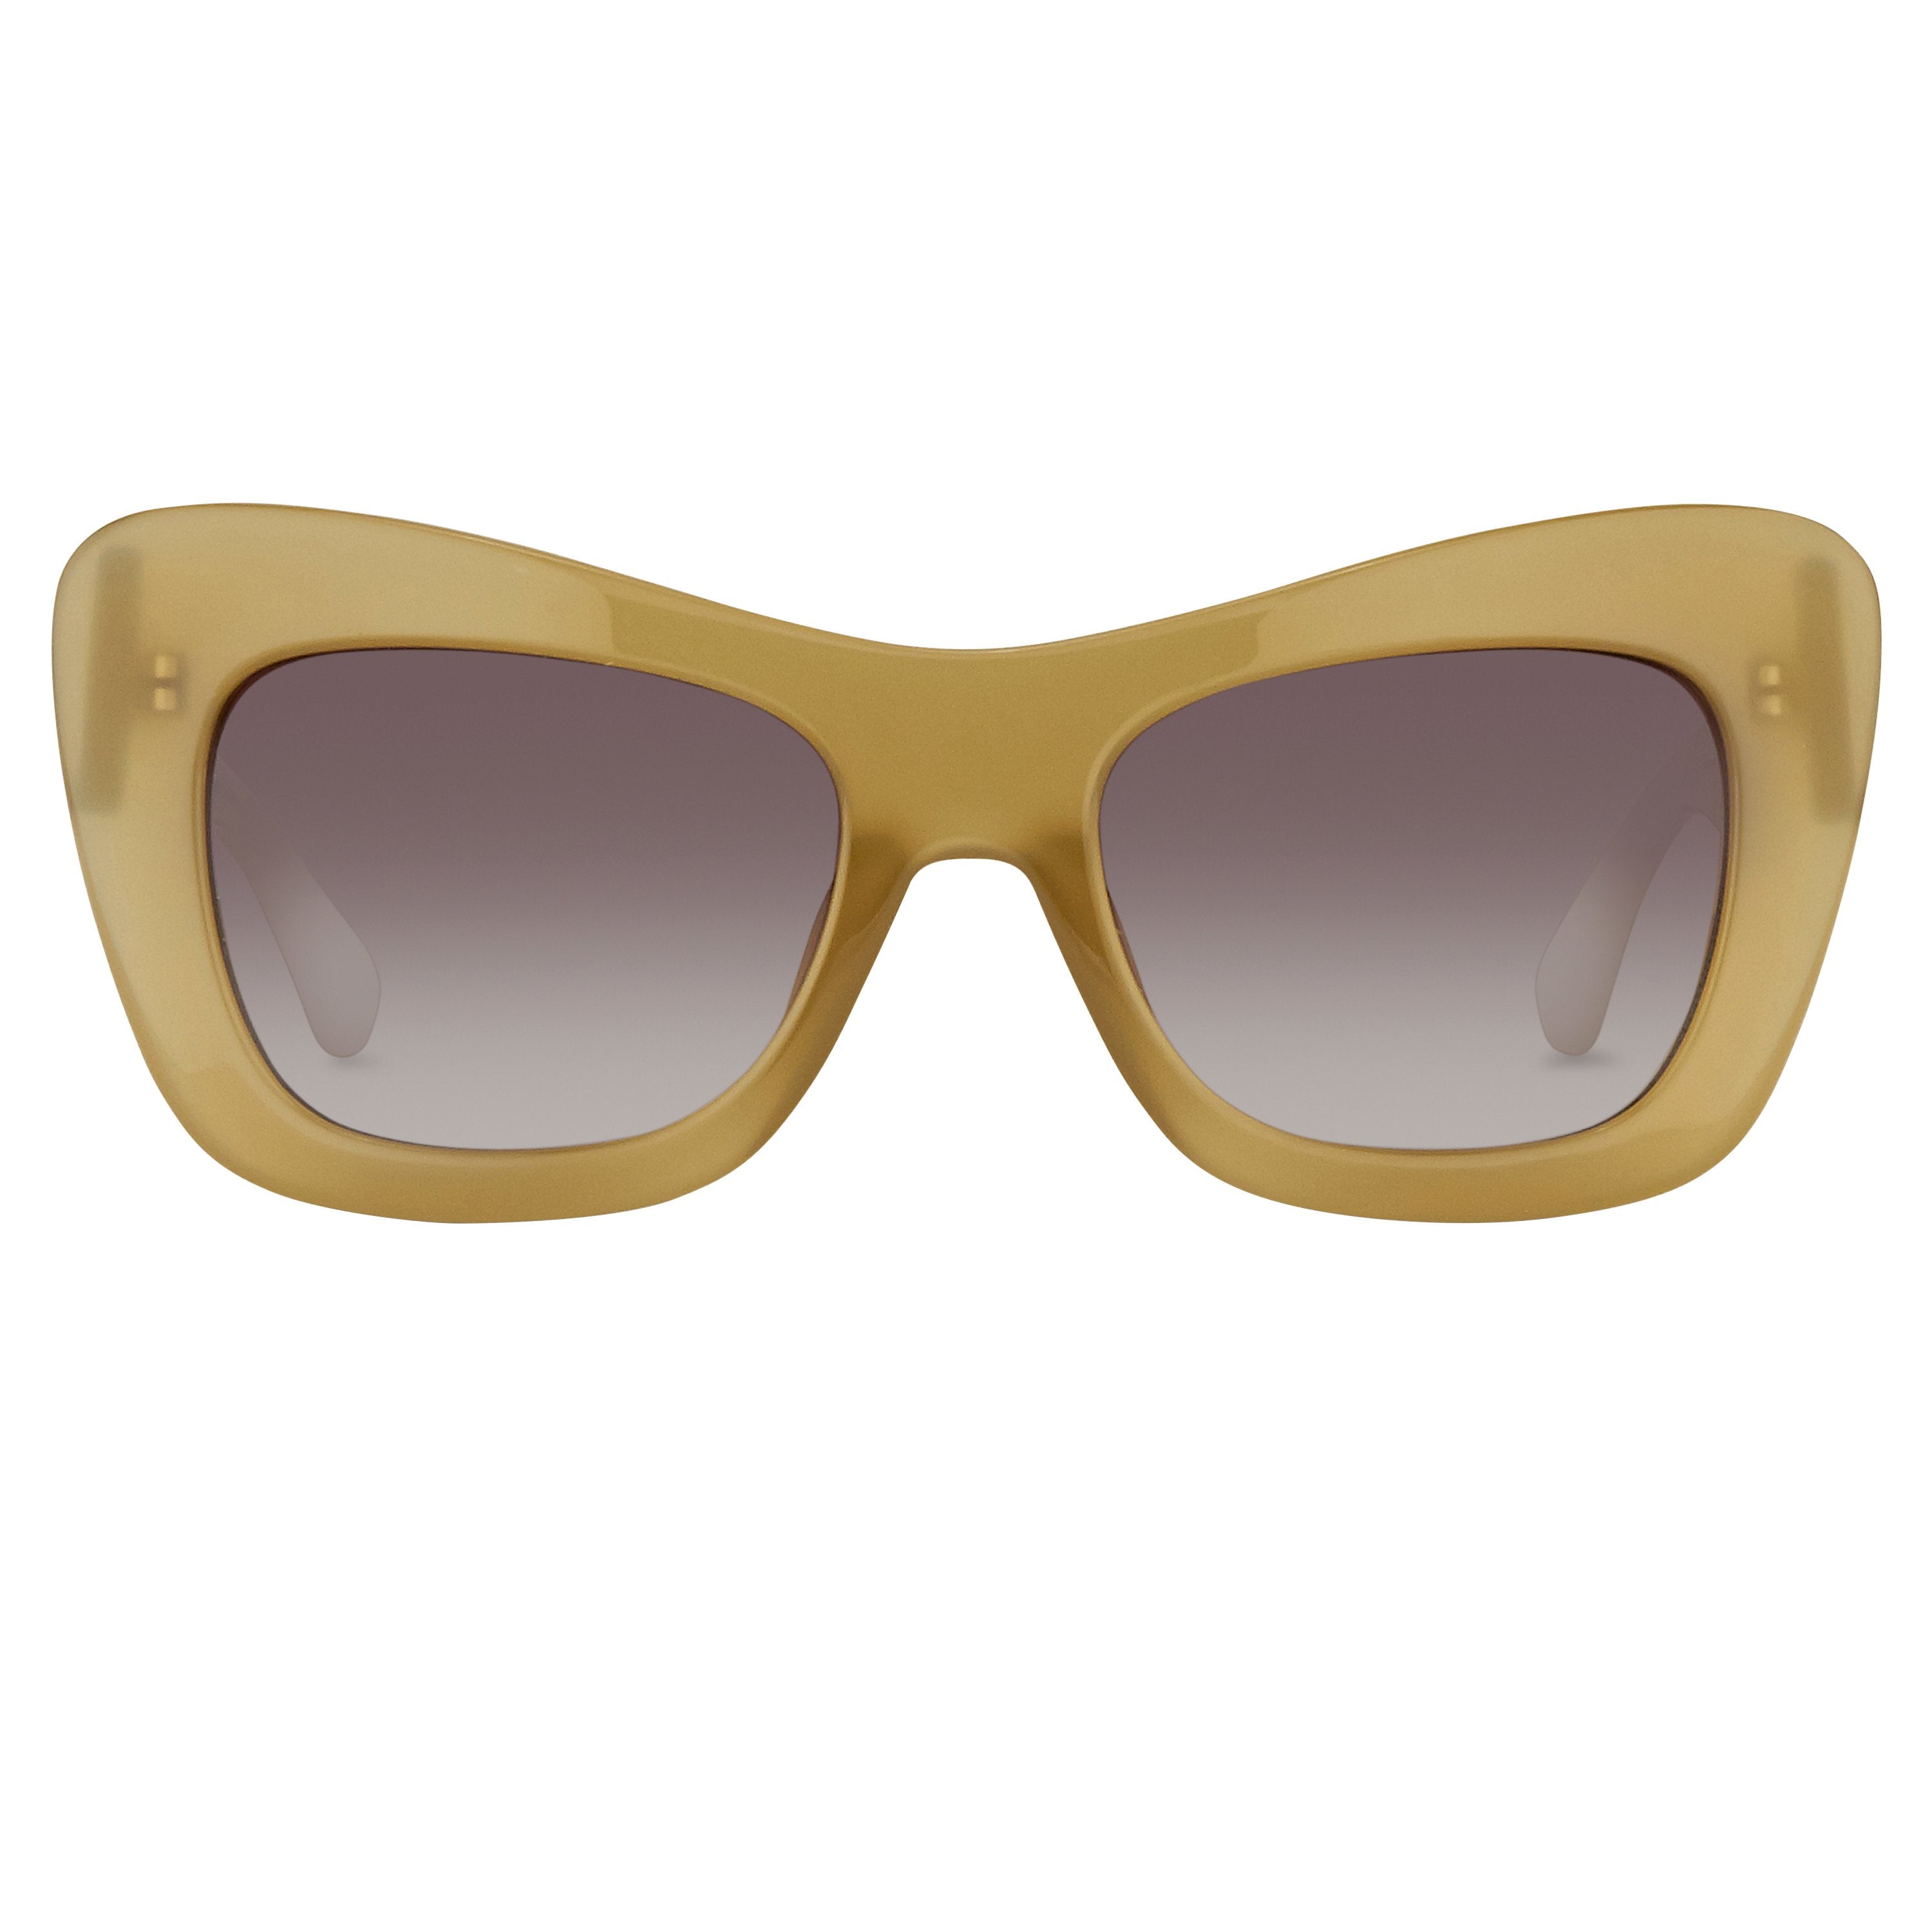 Color_DVN122C7SUN - Dries van Noten 122 C7 Oversized Sunglasses